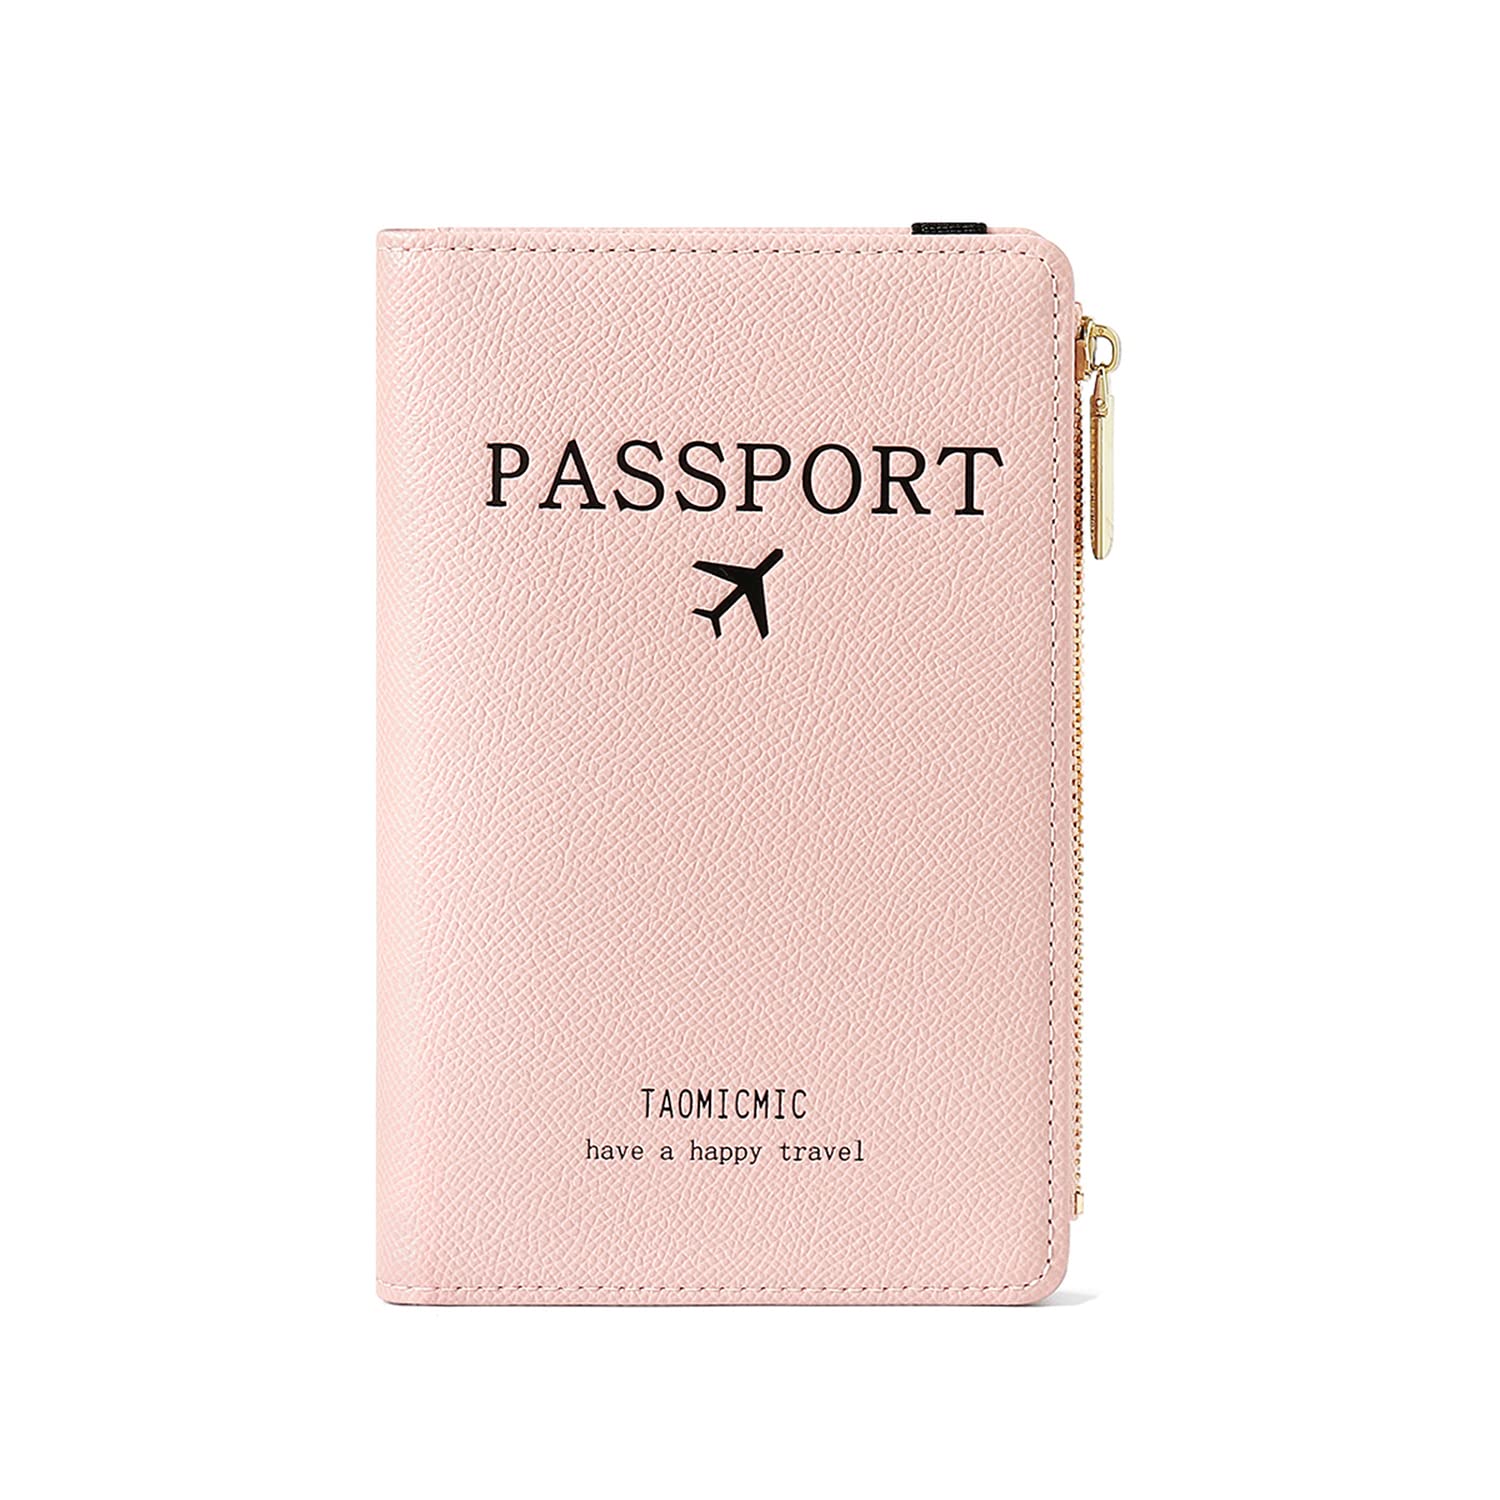 Populaire Katech Protege Passeport, Pochette Passeport Cuir PU Premium Protège Passeport avec Blocage RFID, Porte Passeport pour Billet d´avion Cartes de Crédit (Rose) rAkZJsAUy boutique en ligne